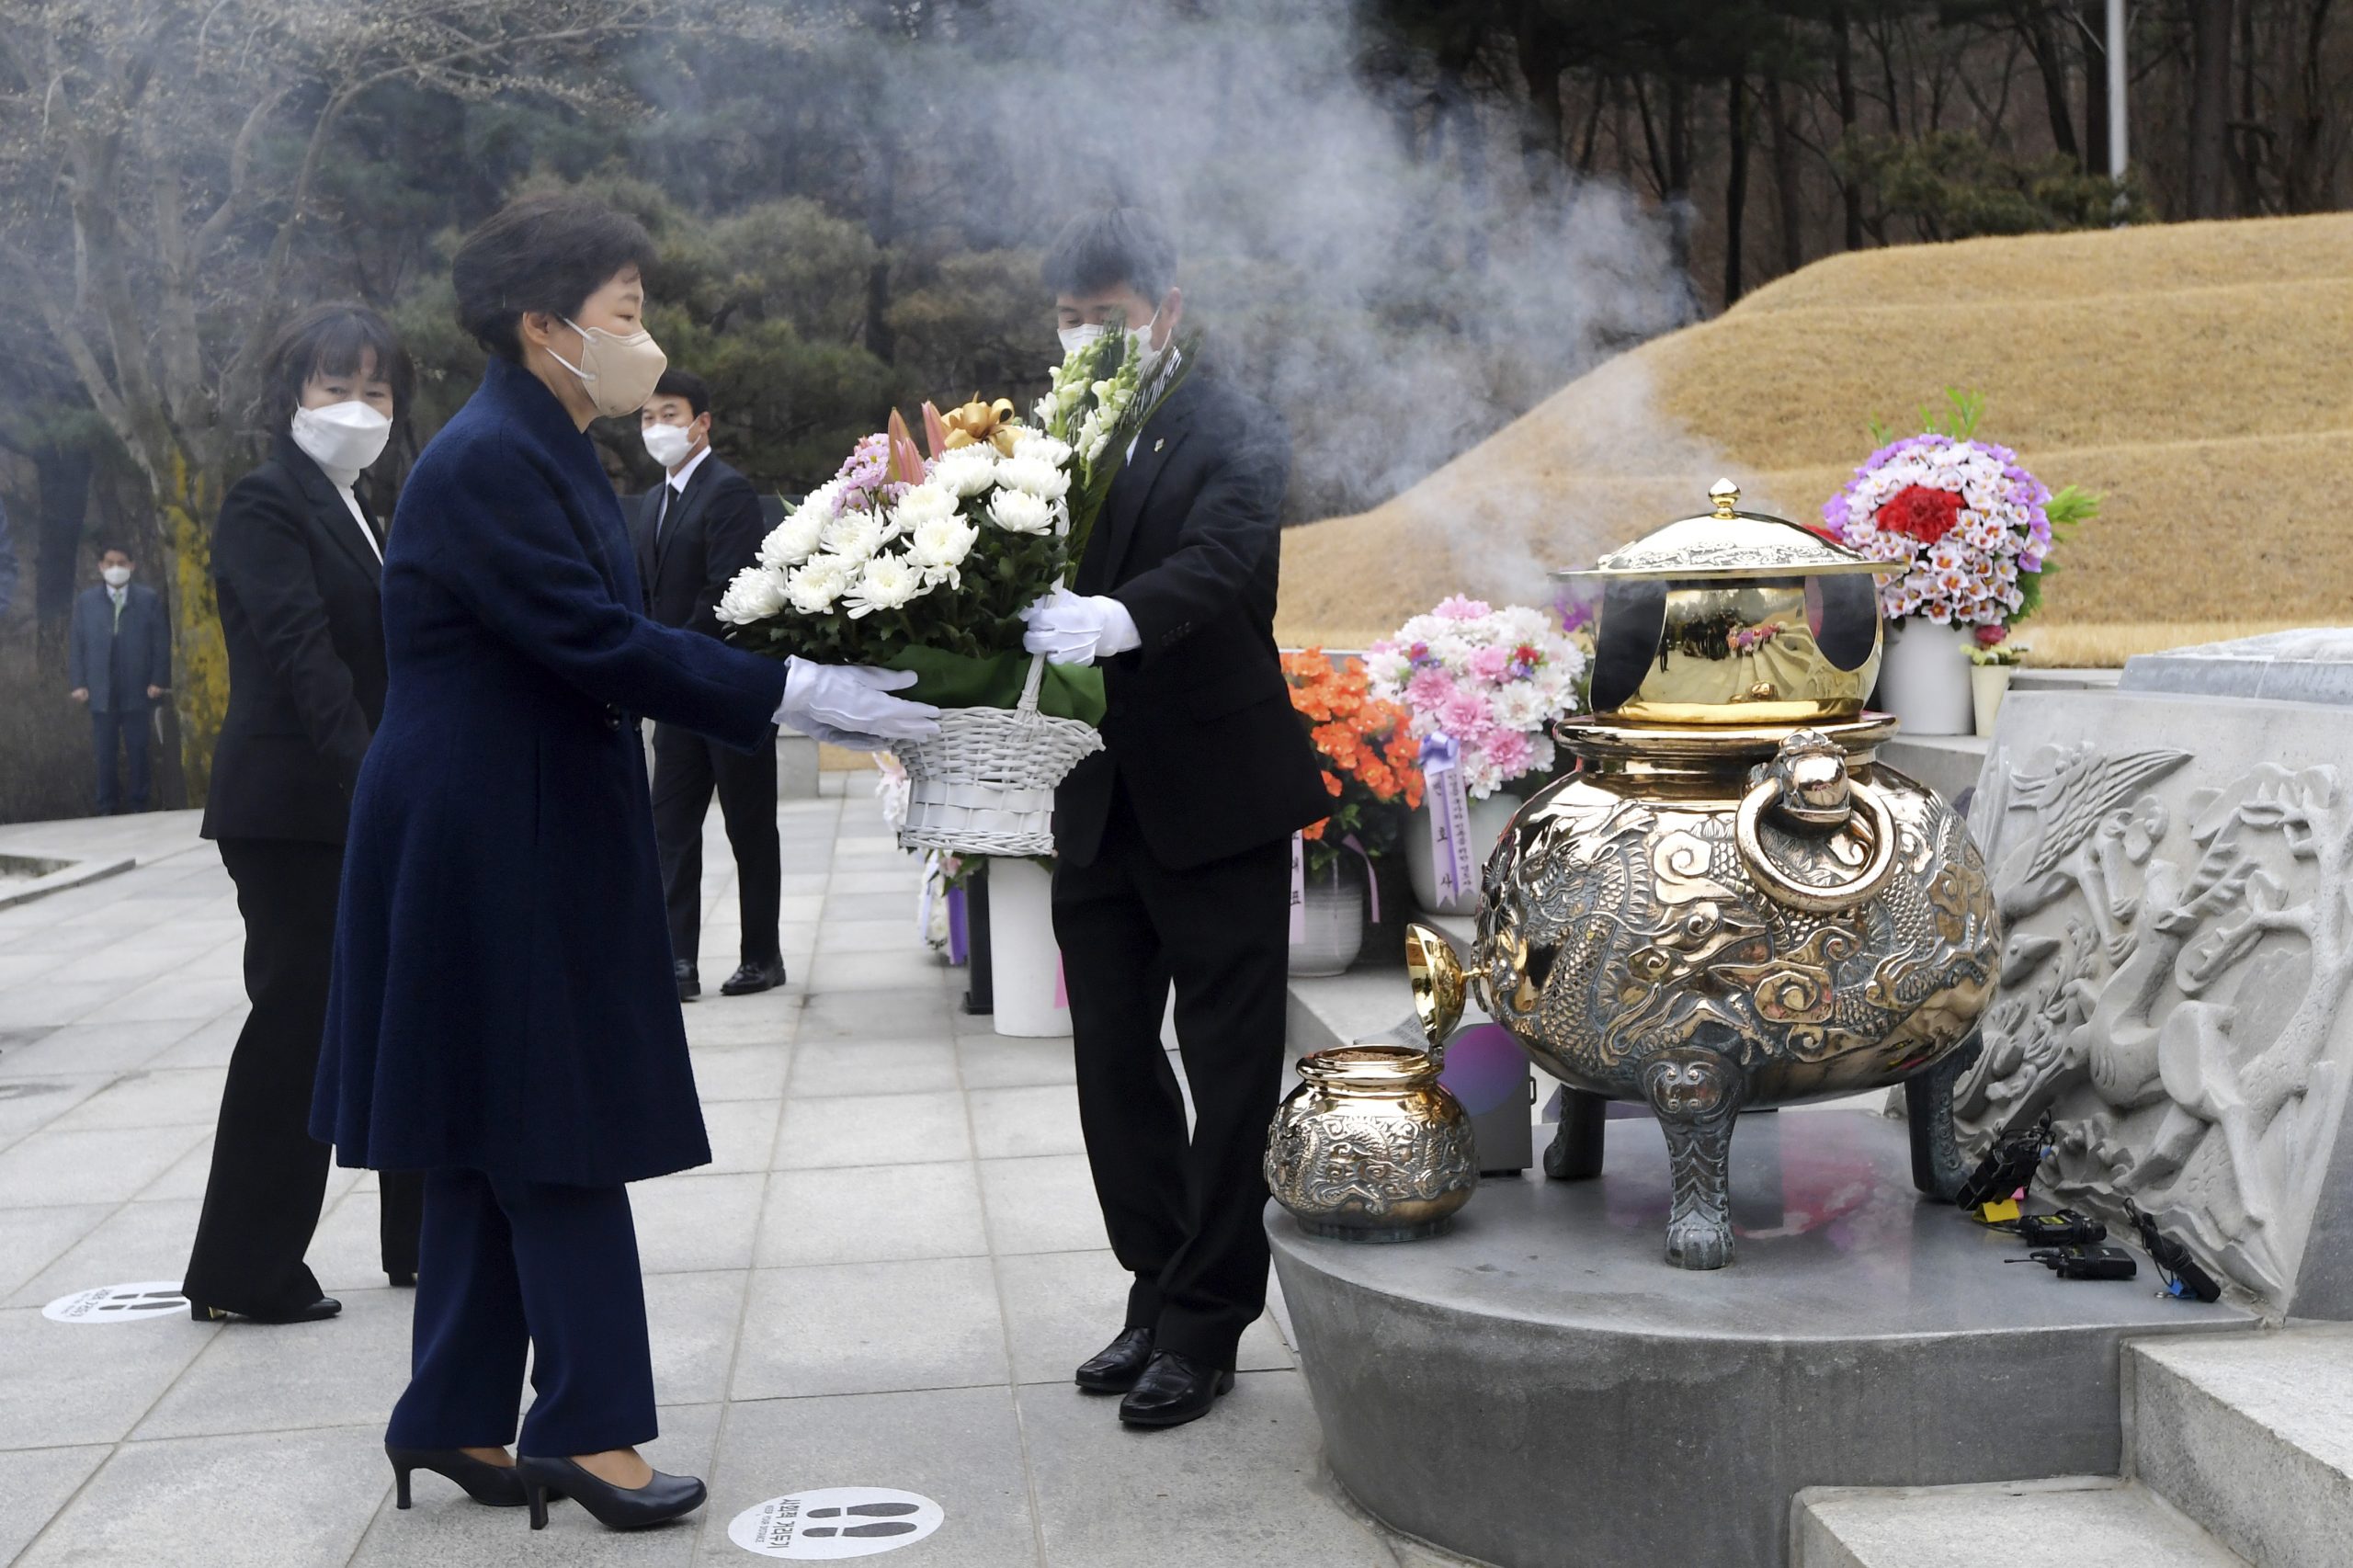  韩国前总统朴槿惠出院 先参拜父亲朴正熙之墓再返家